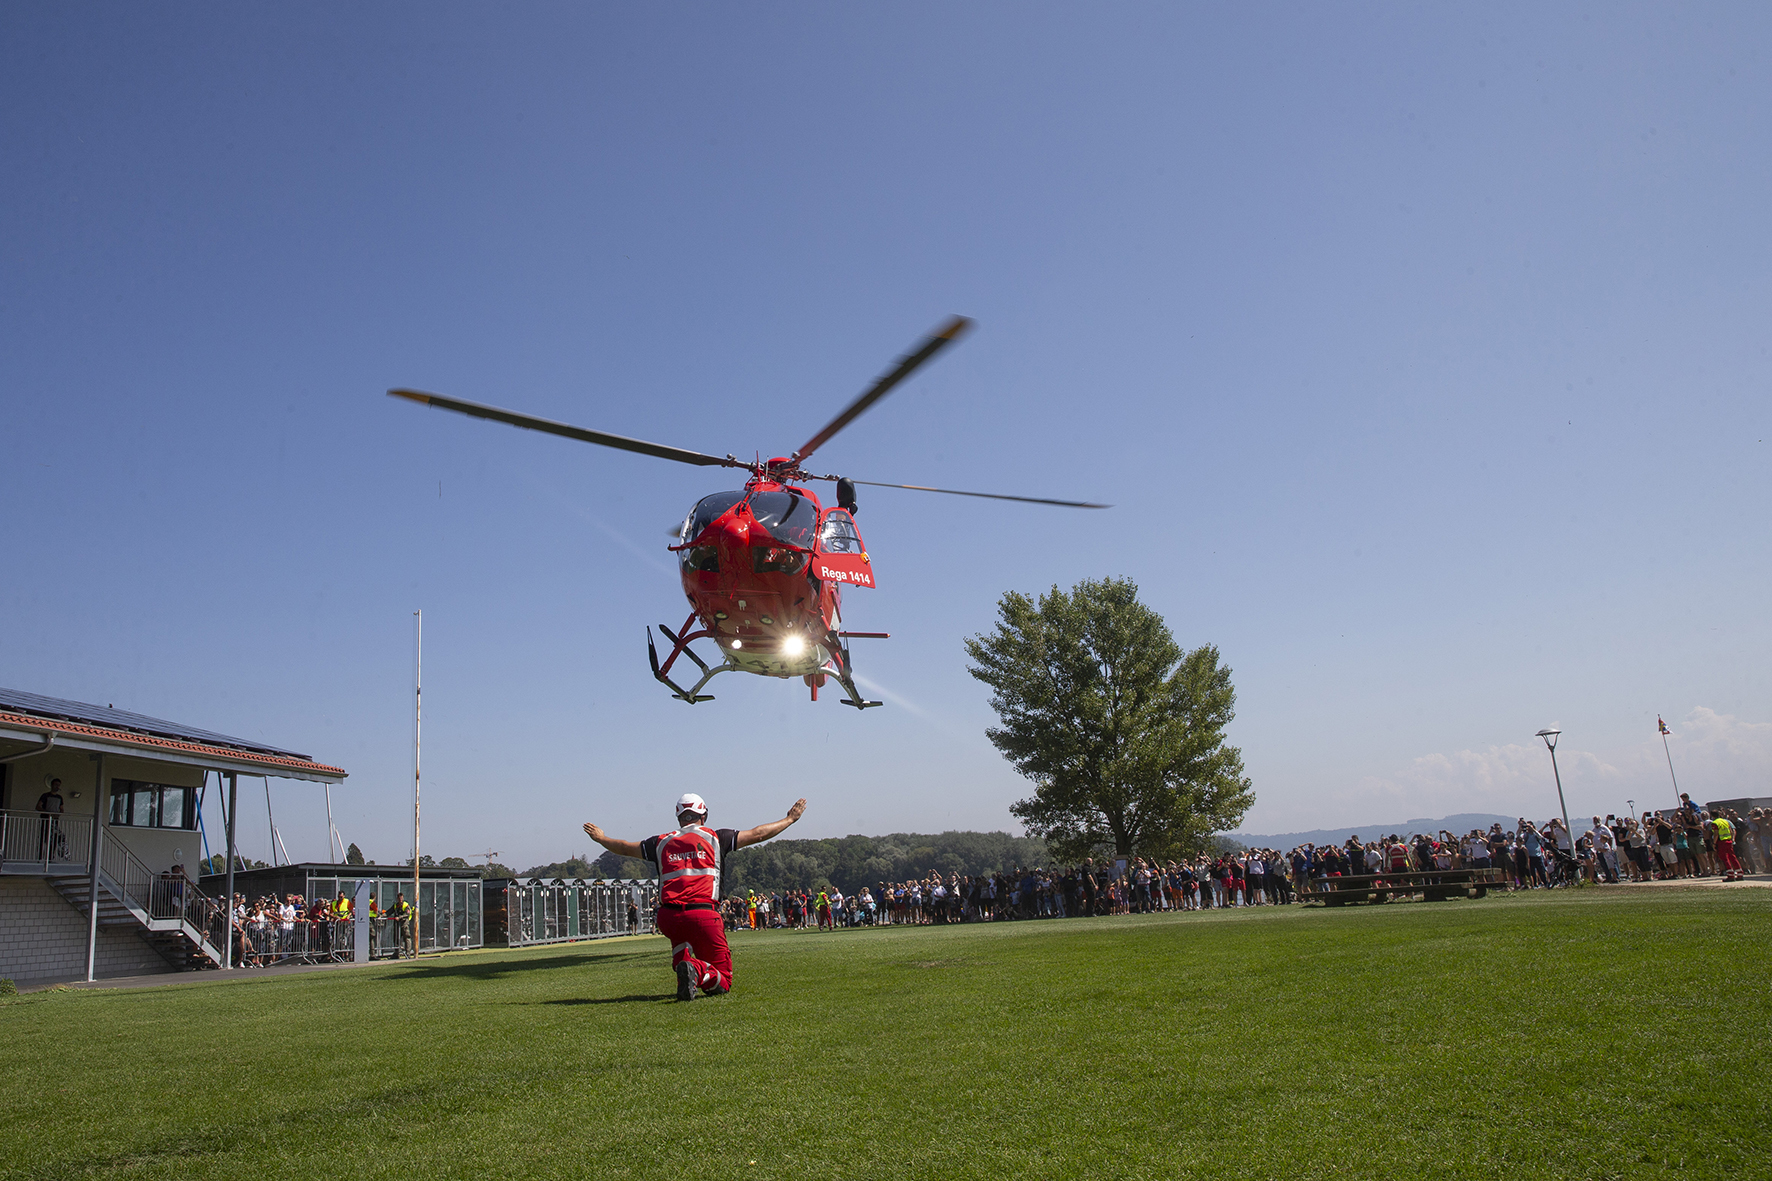 La fête internationale du sauvetage au port de Saint-Blaise a comblé petits et grands avec la venue de l'hélicoptère de la Rega.